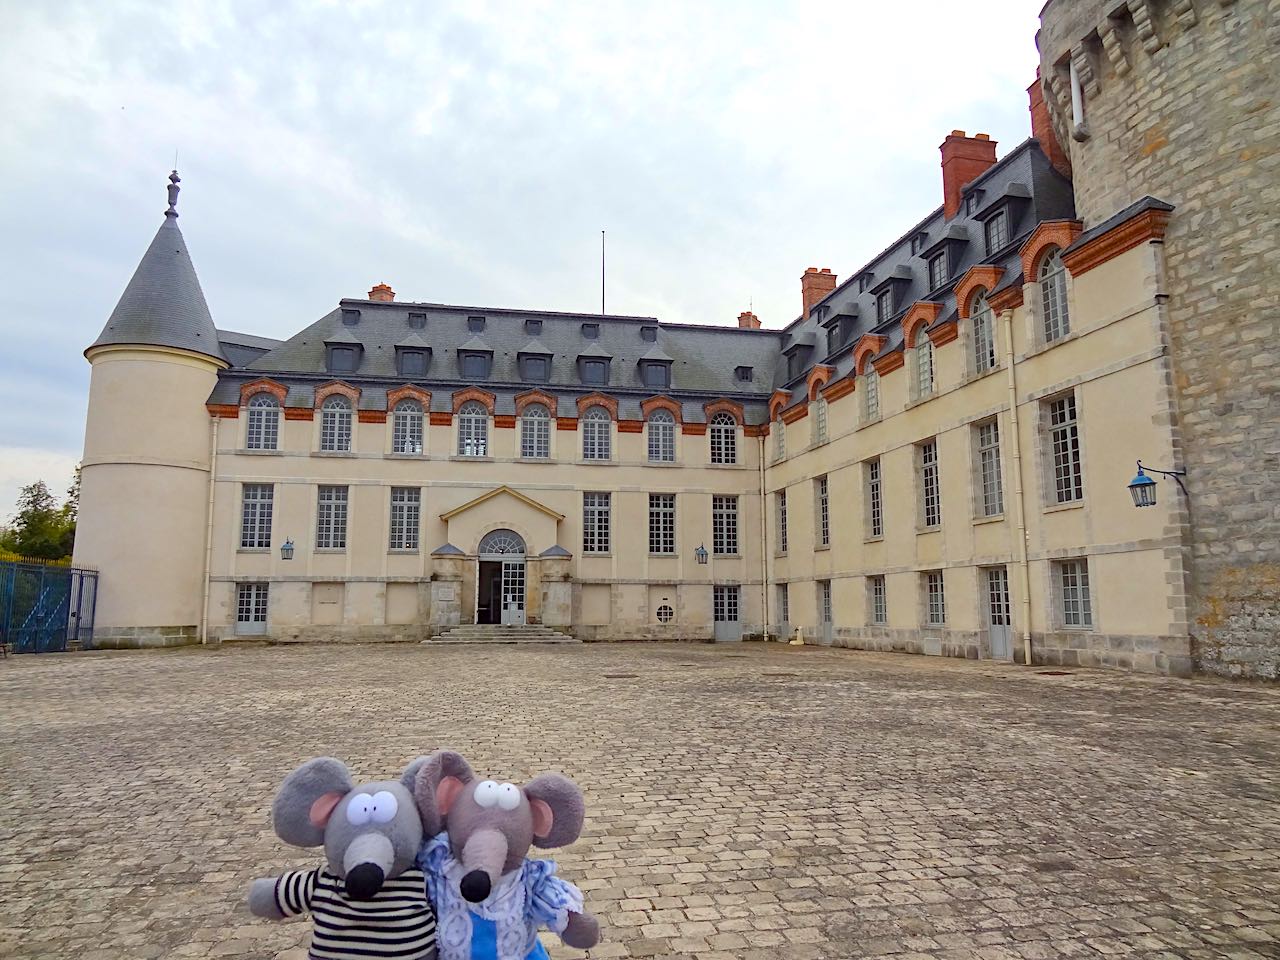 château de Rambouillet